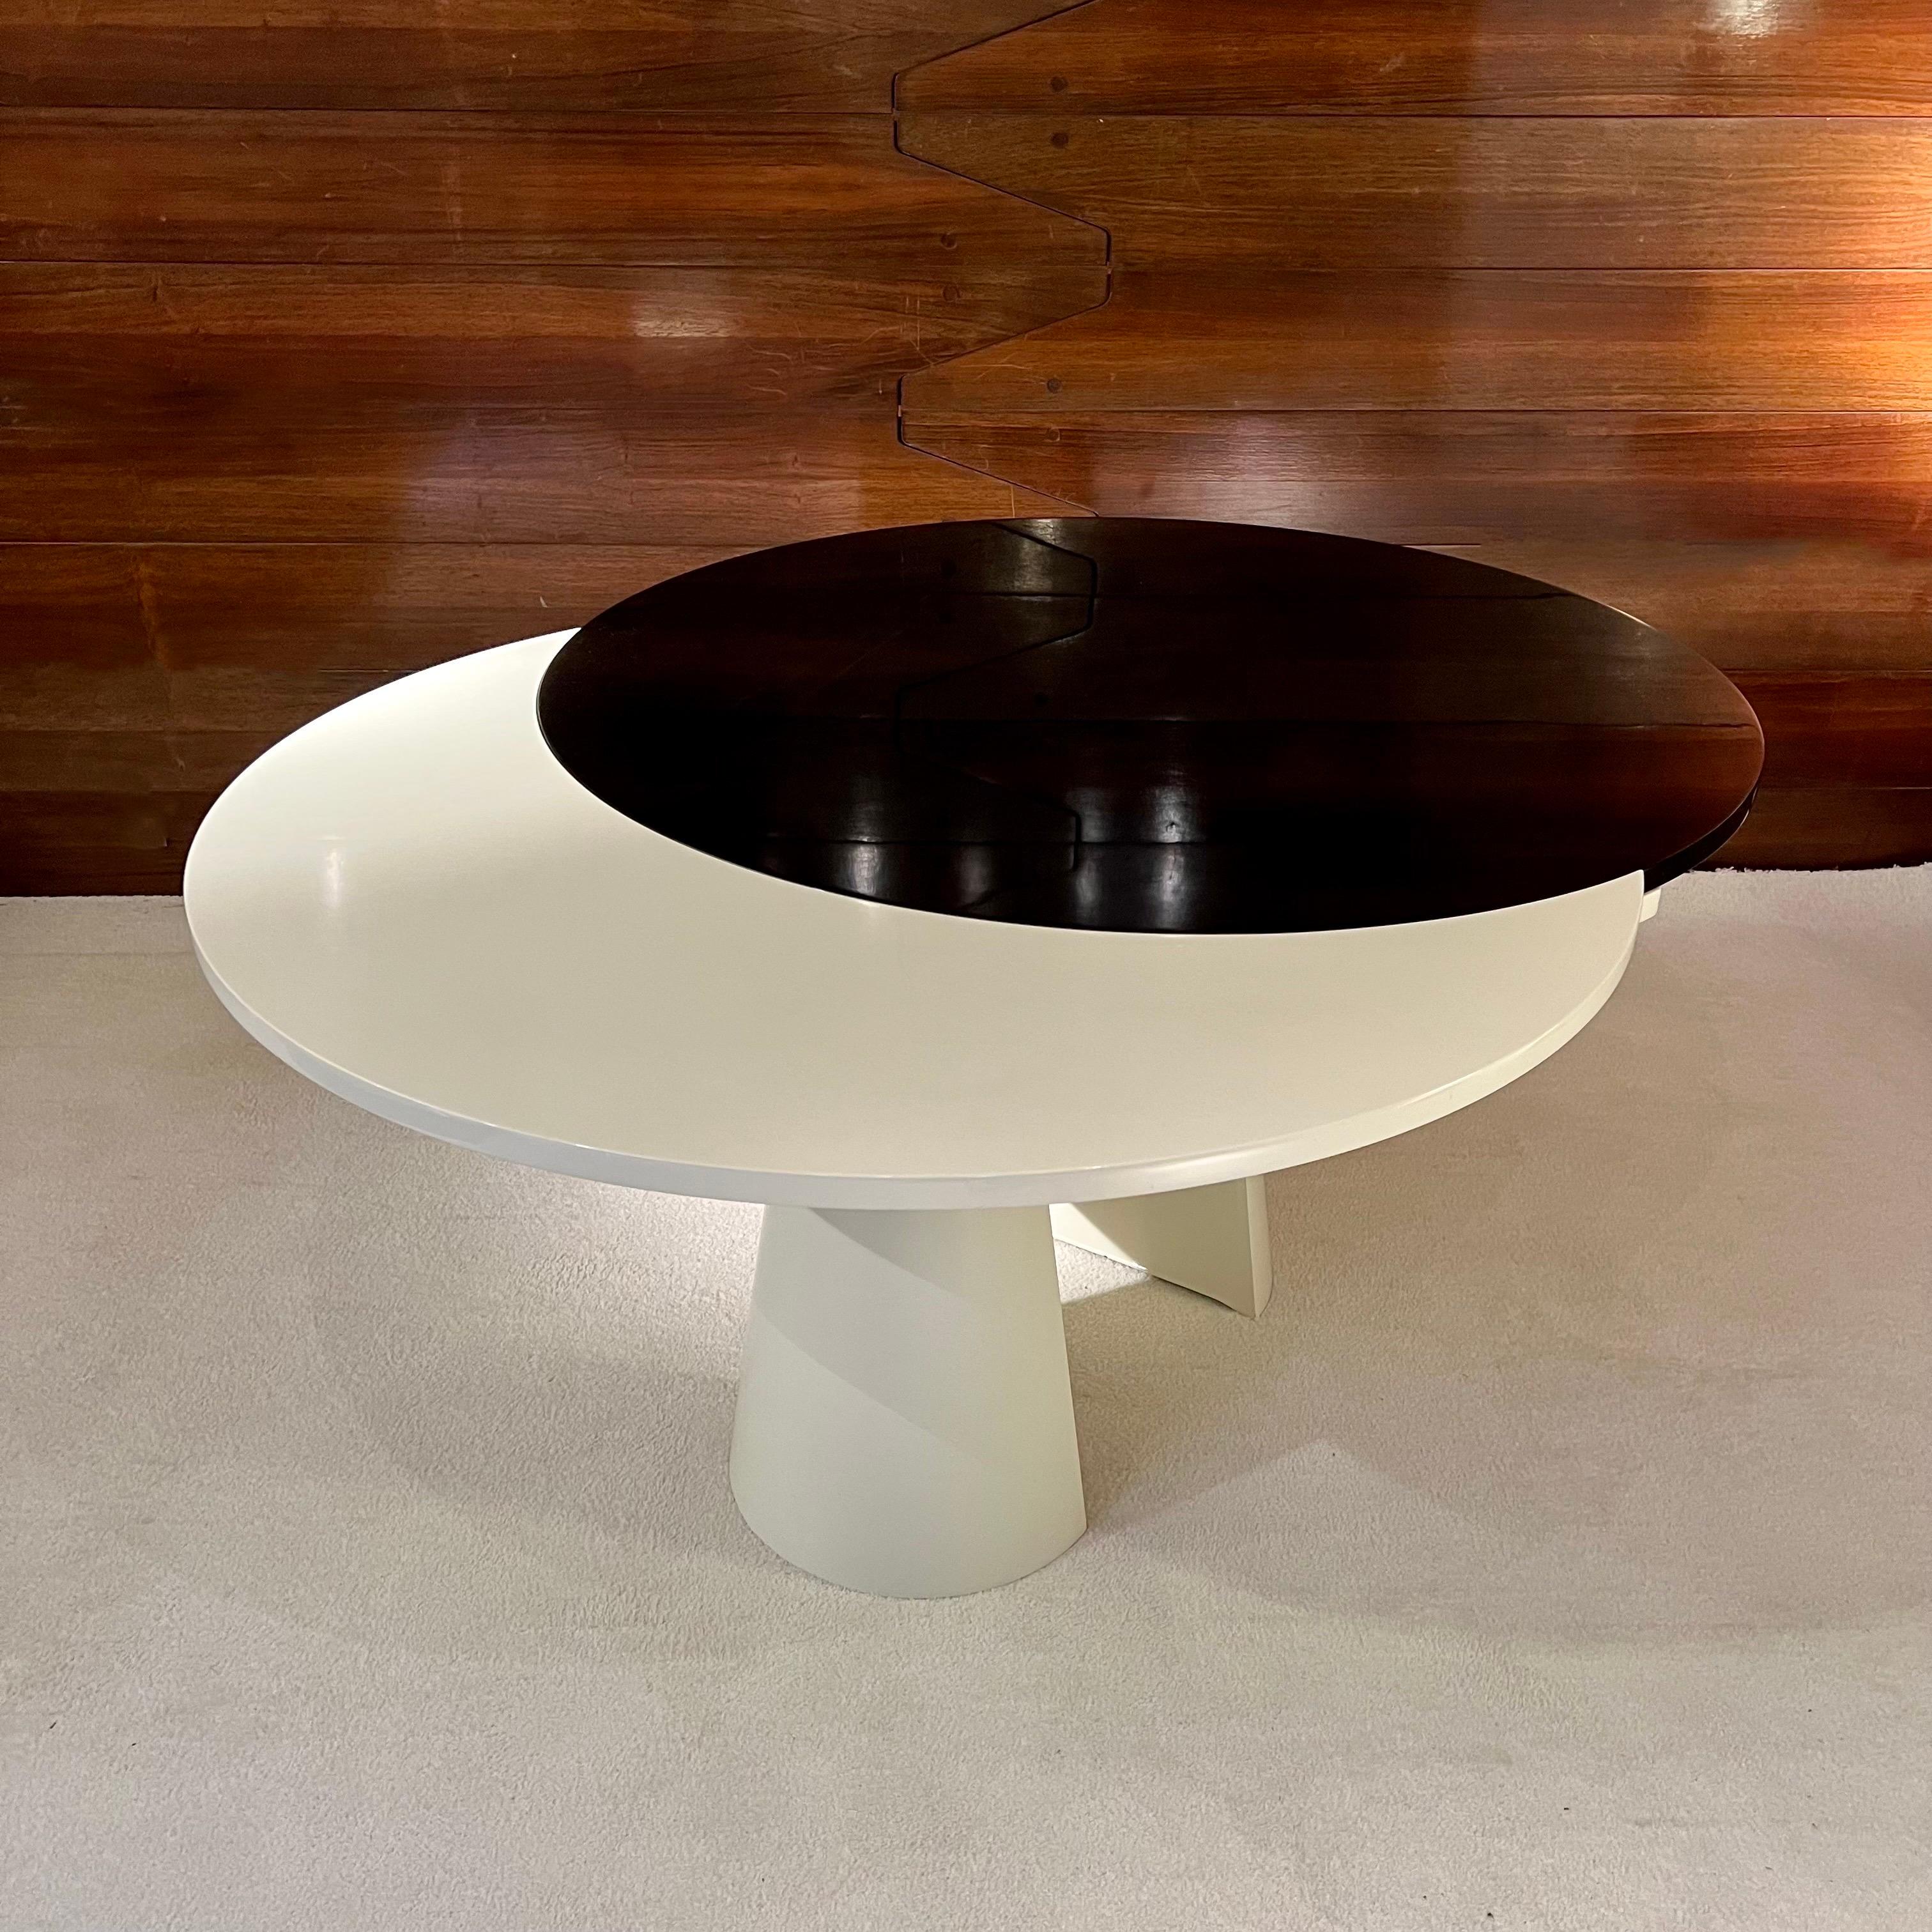 Dieser herrliche Tisch, der in den 80er Jahren in Frankreich hergestellt wurde, hat zwei lackierte Platten, eine schwarze und eine weiße. Durch das ausgeklügelte Verlängerungssystem lässt er sich von einem runden in einen ovalen Tisch verwandeln.